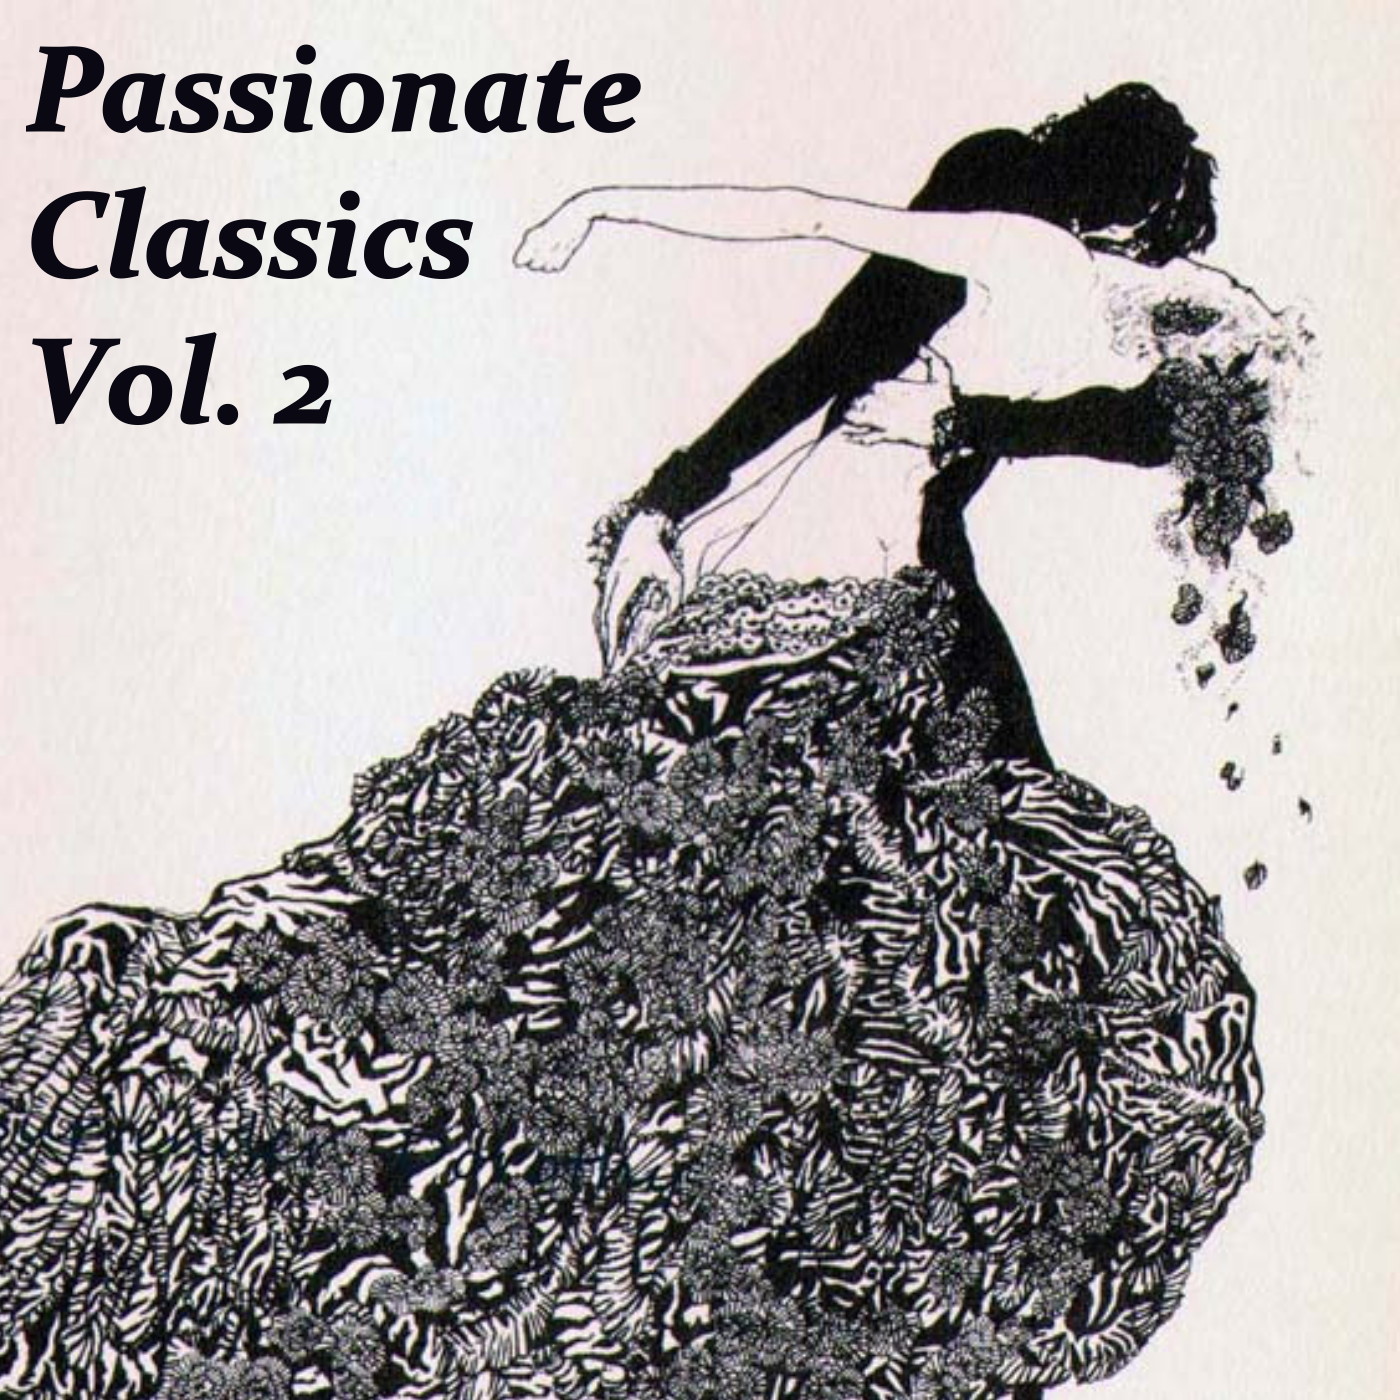 Passionate Classics, Vol. 2